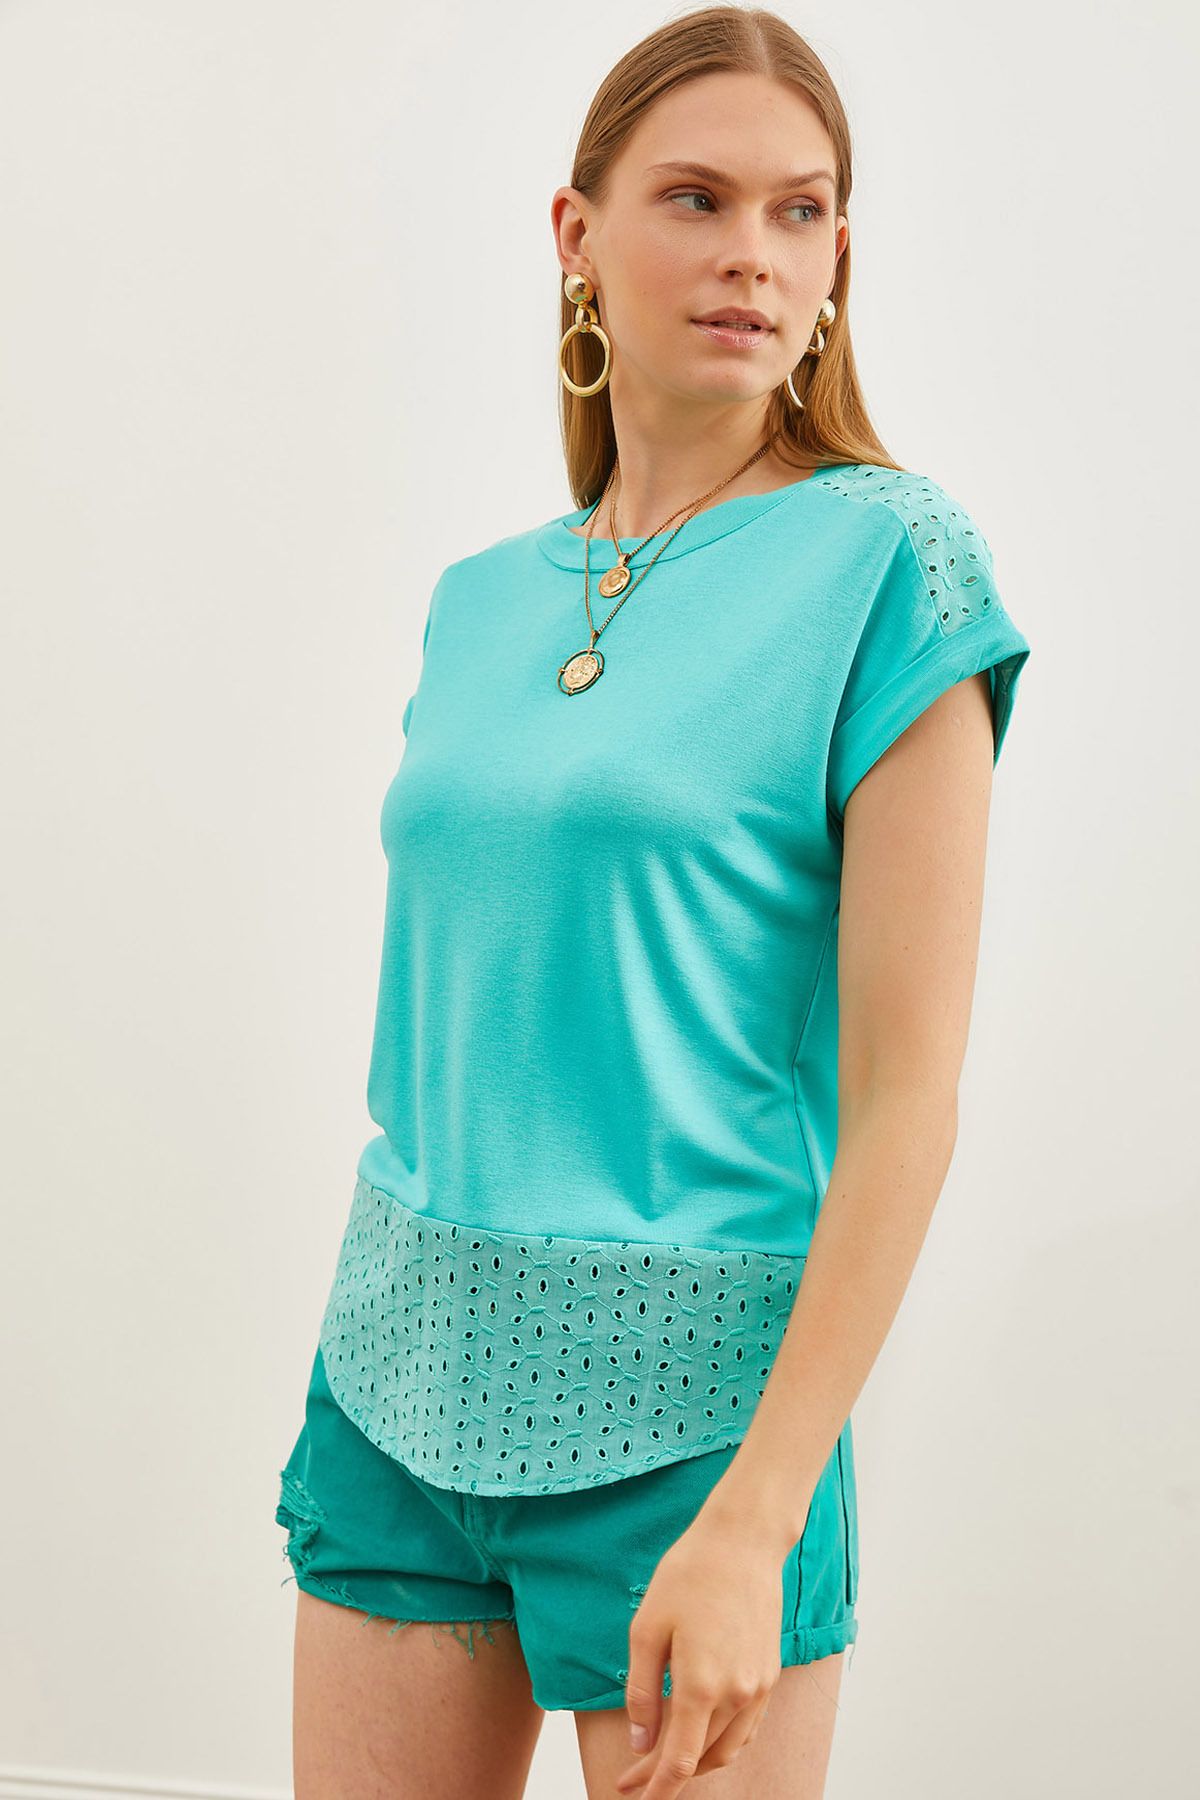 Olalook Kadın Mint Yeşili Güpür Detaylı Tişört TSH-19000190